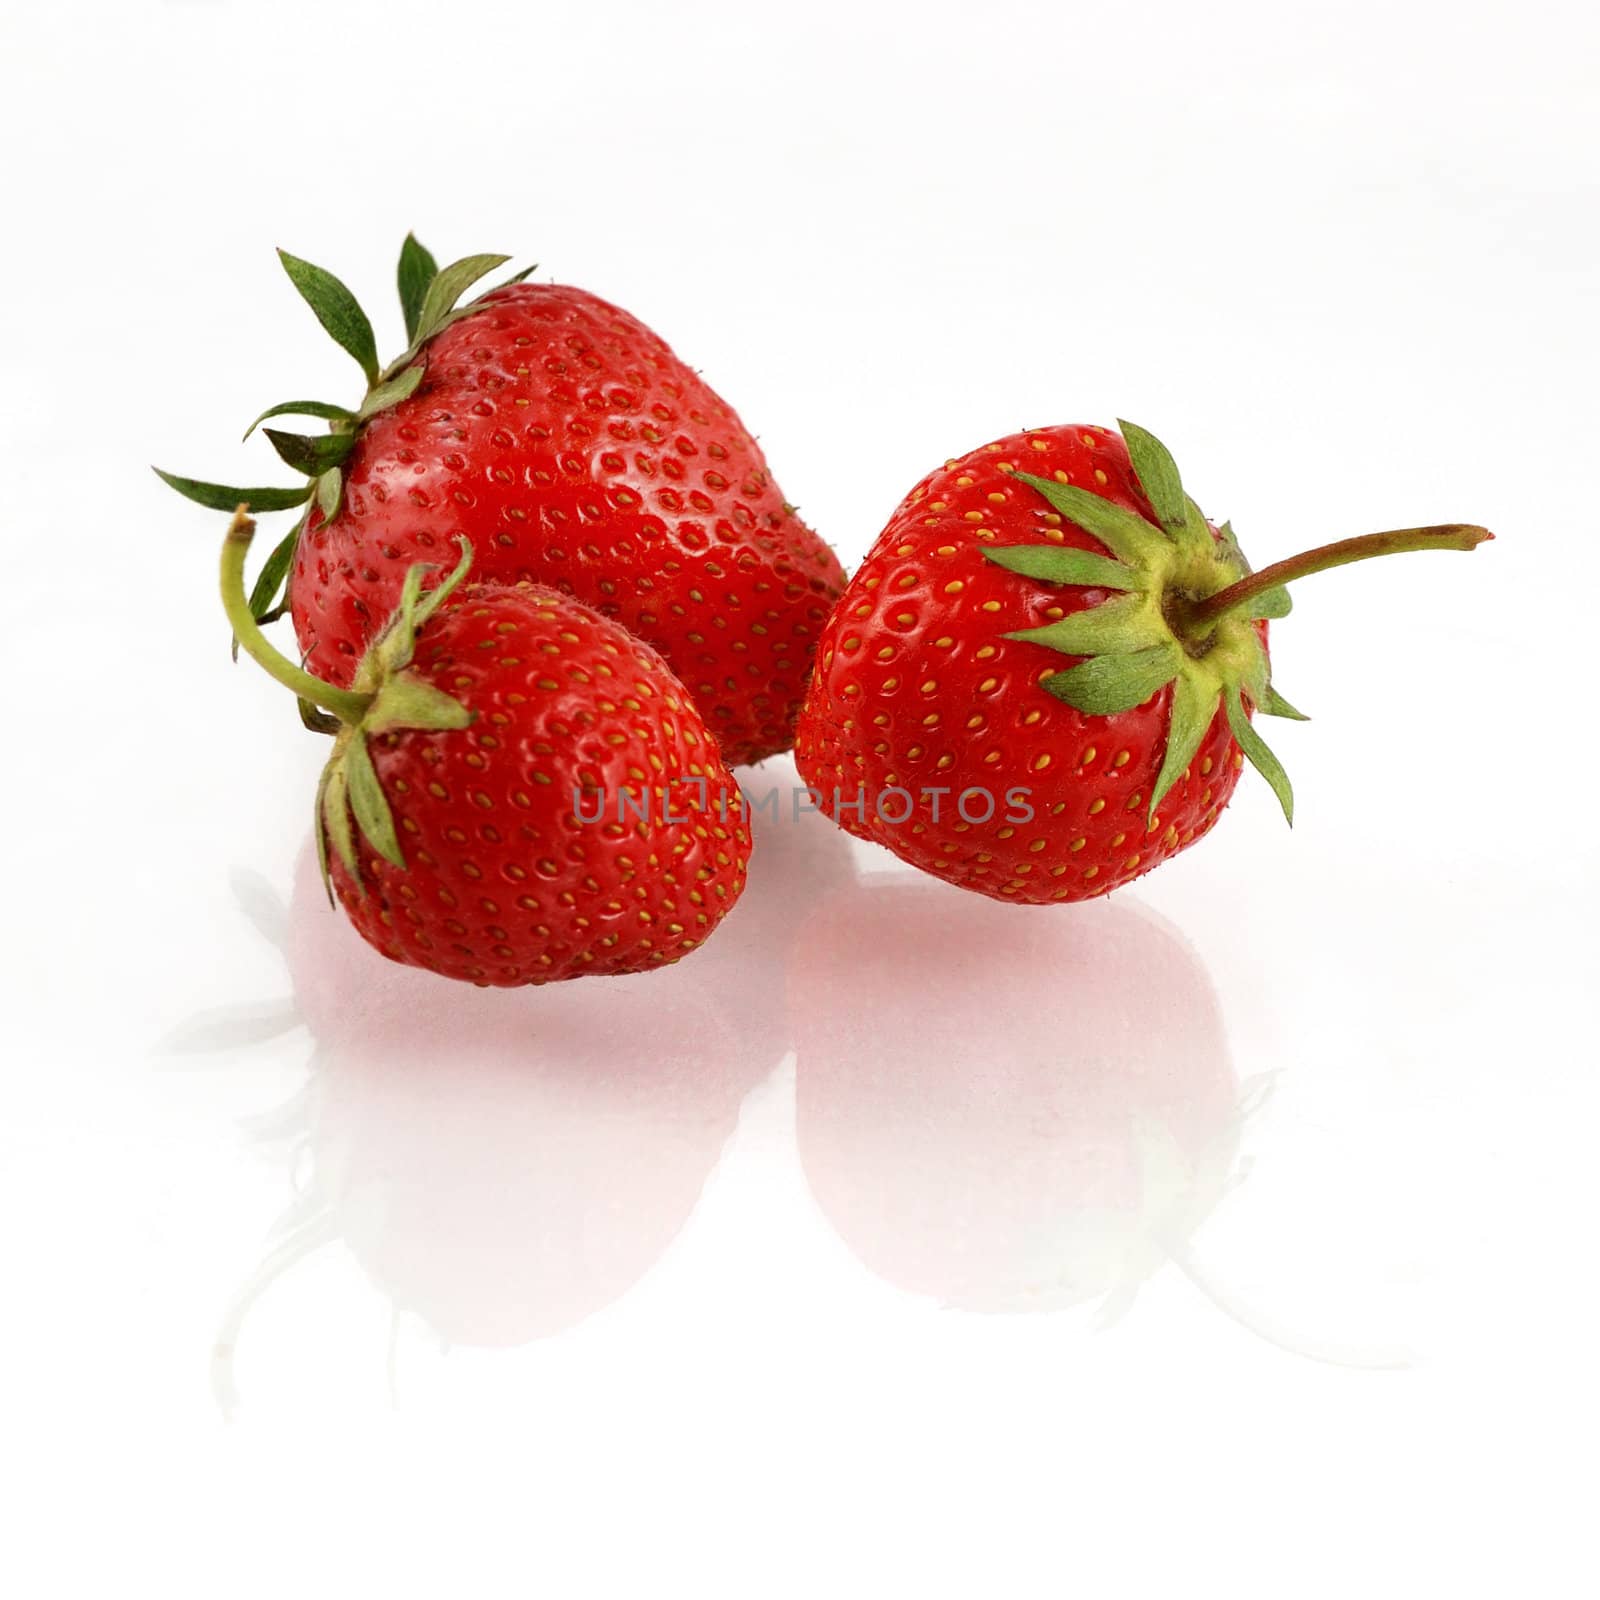 strawberry by tomekj